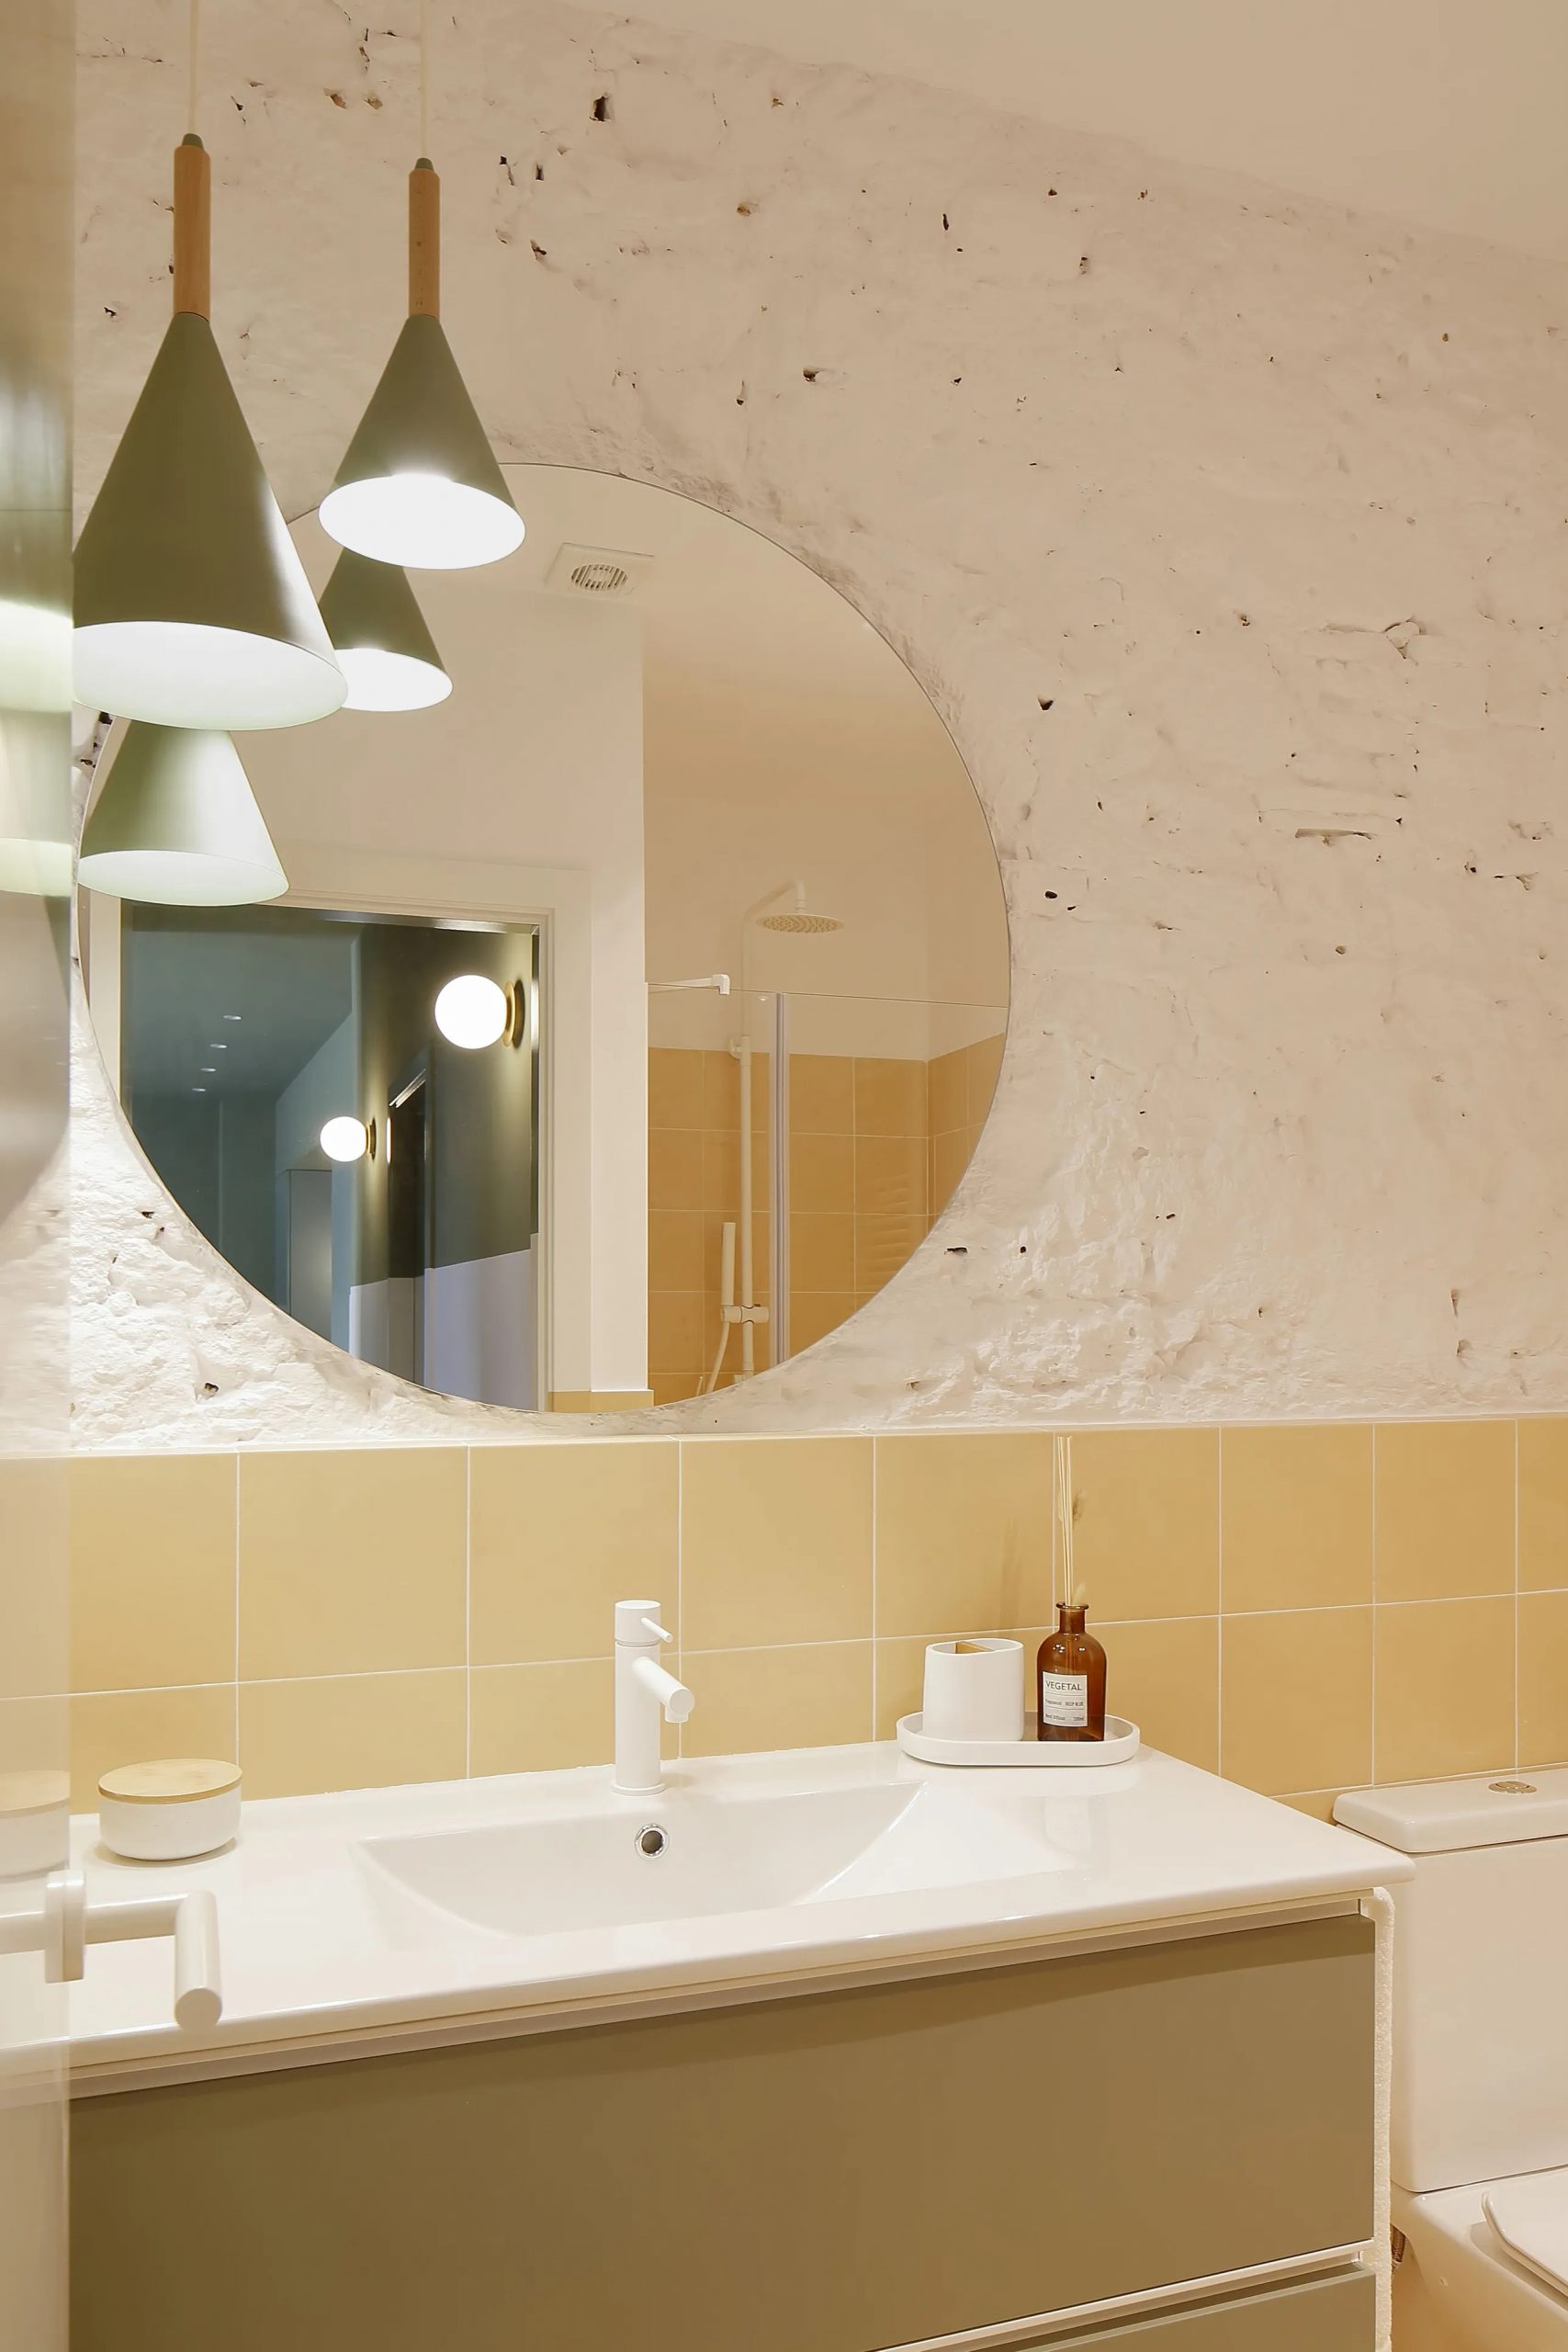 salle de bain jaune et verte décoration design